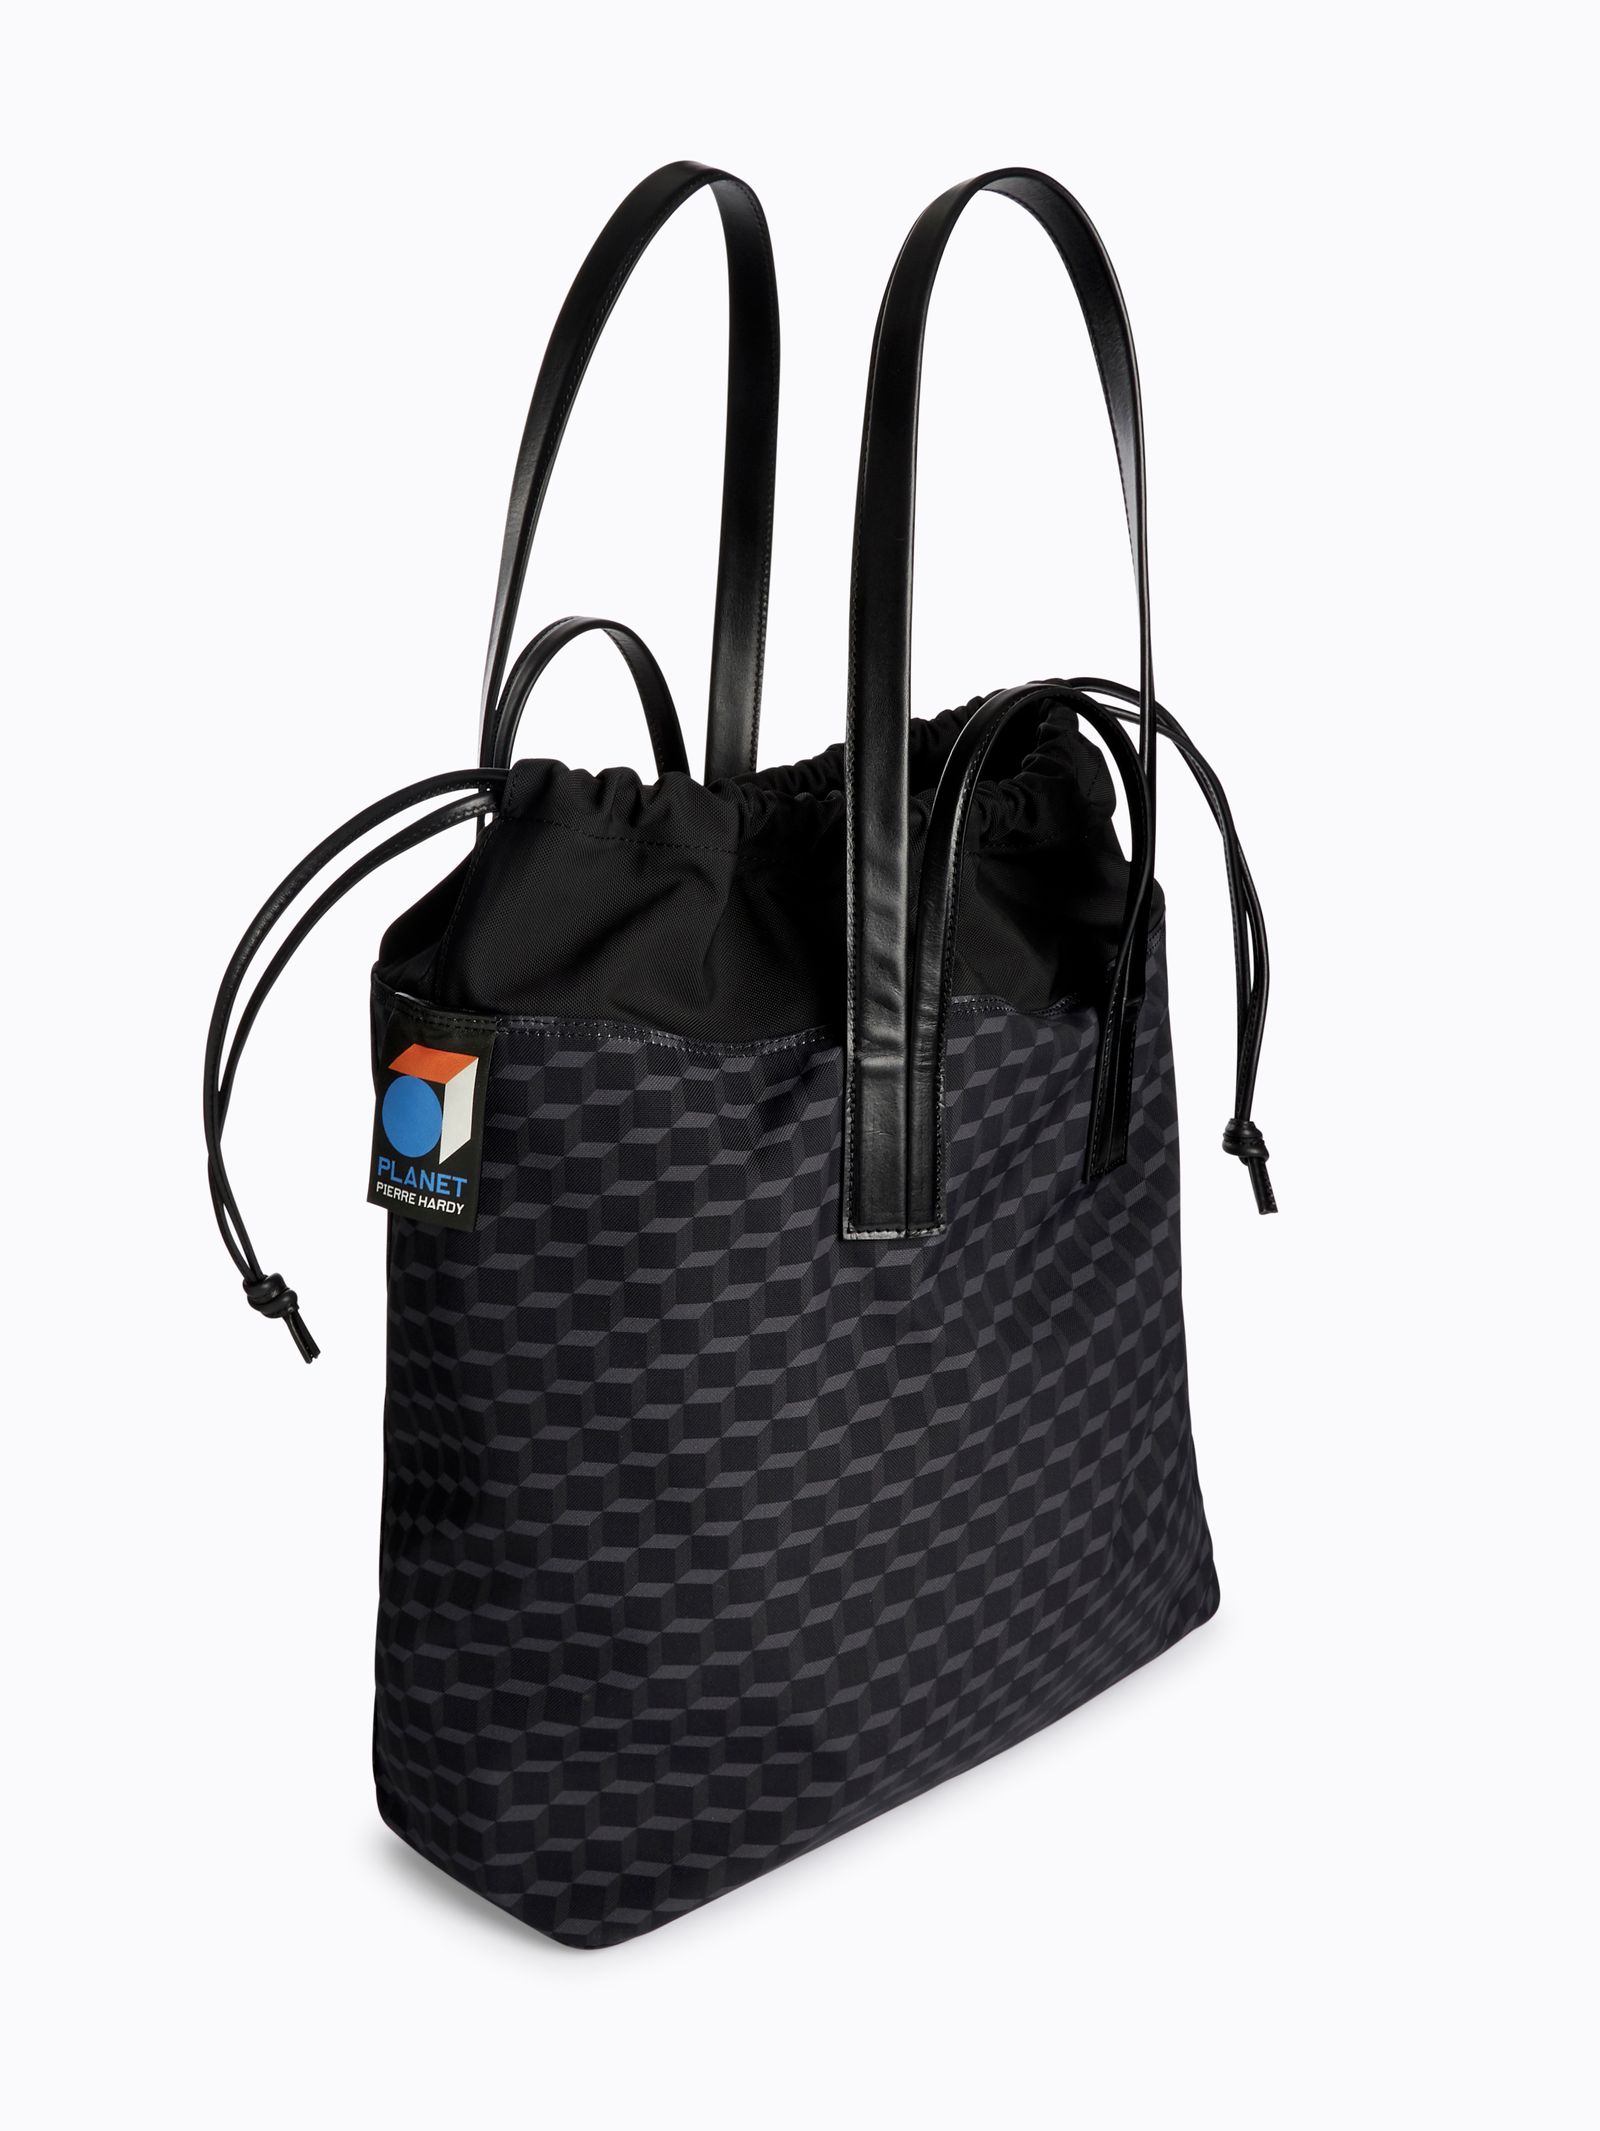 ツイン トート バッグ - Twin tote bag - BLACK×BLACK